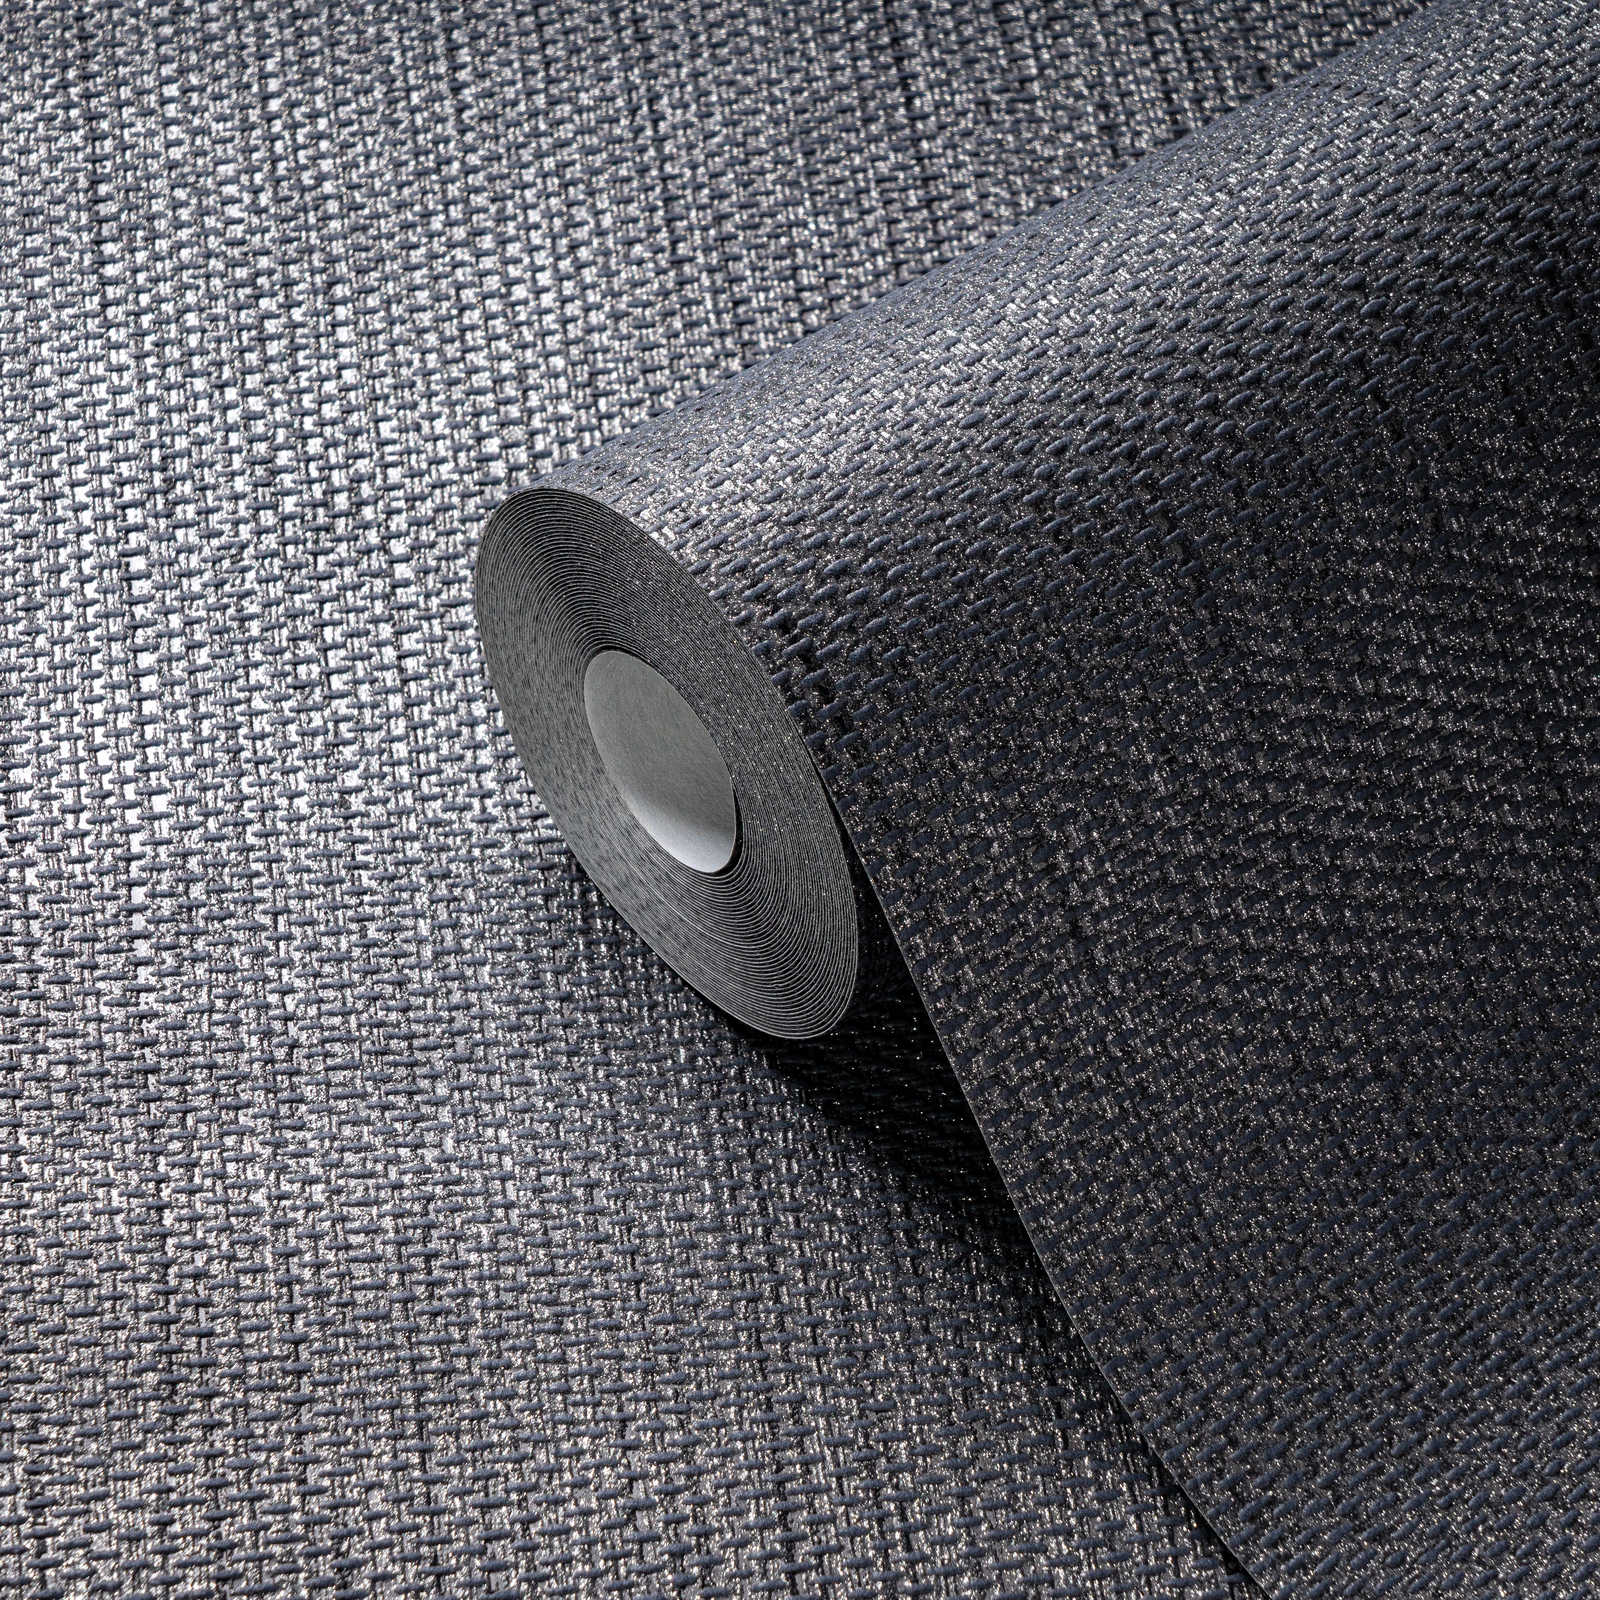             Papel pintado de aspecto de lino con estructura textil - gris, negro
        